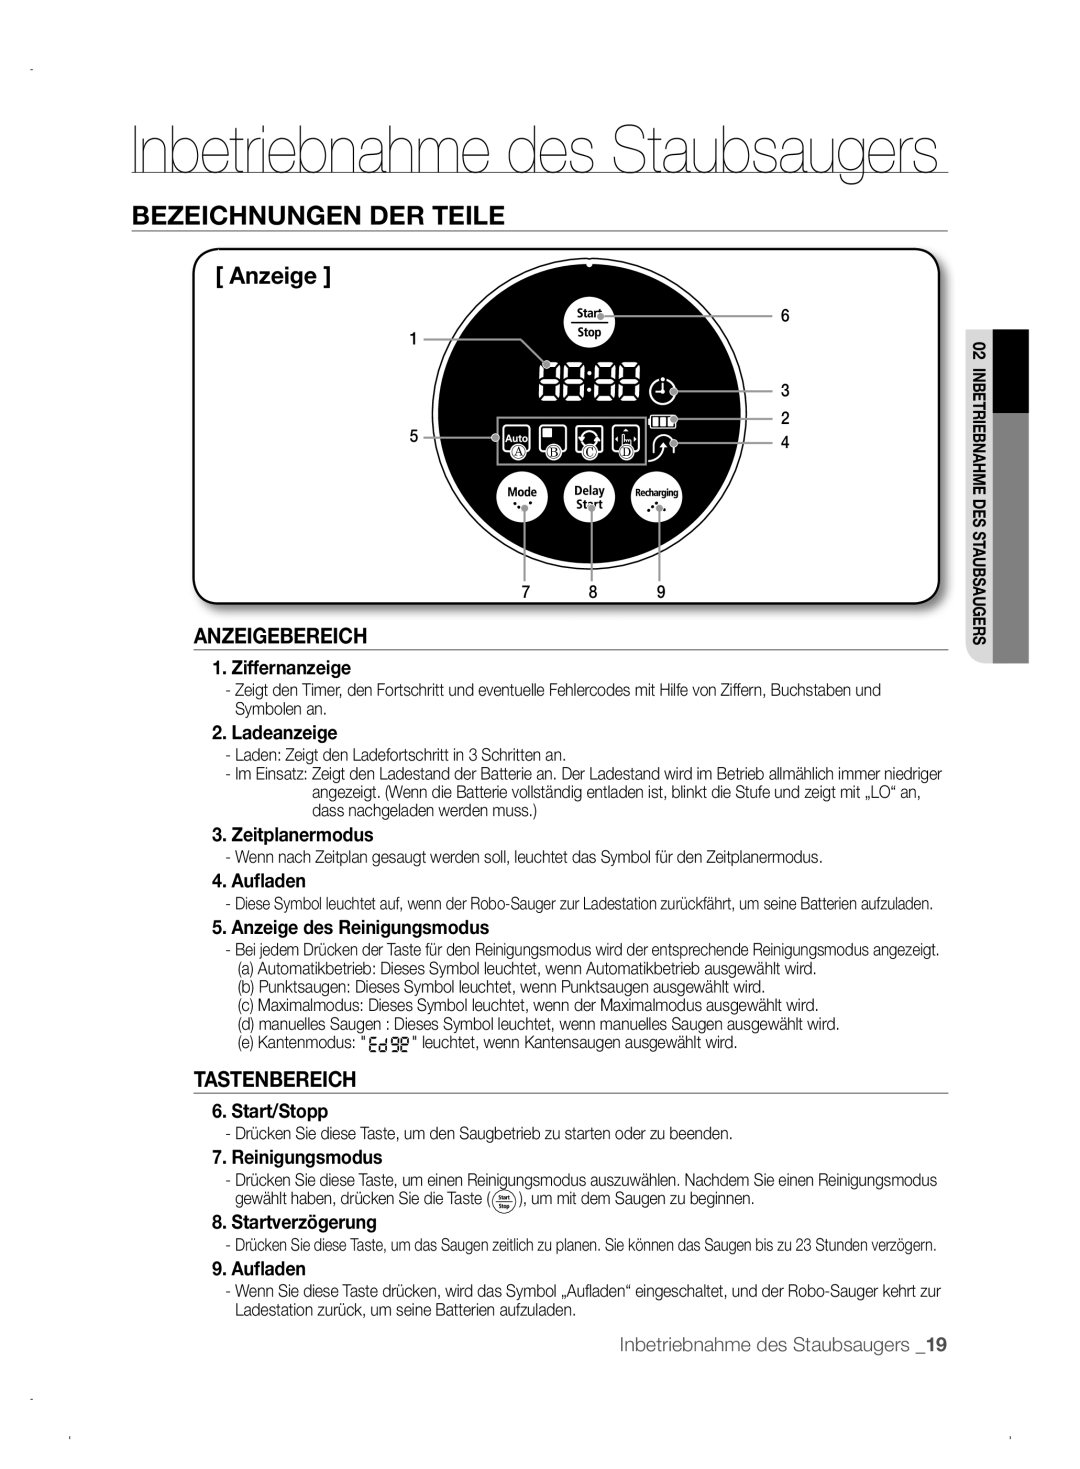 Samsung VCR8845T3A/XEO manual Anzeigebereich, Tastenbereich, Inbetriebnahme des Staubsaugers, Bezeichnungen Der Teile 